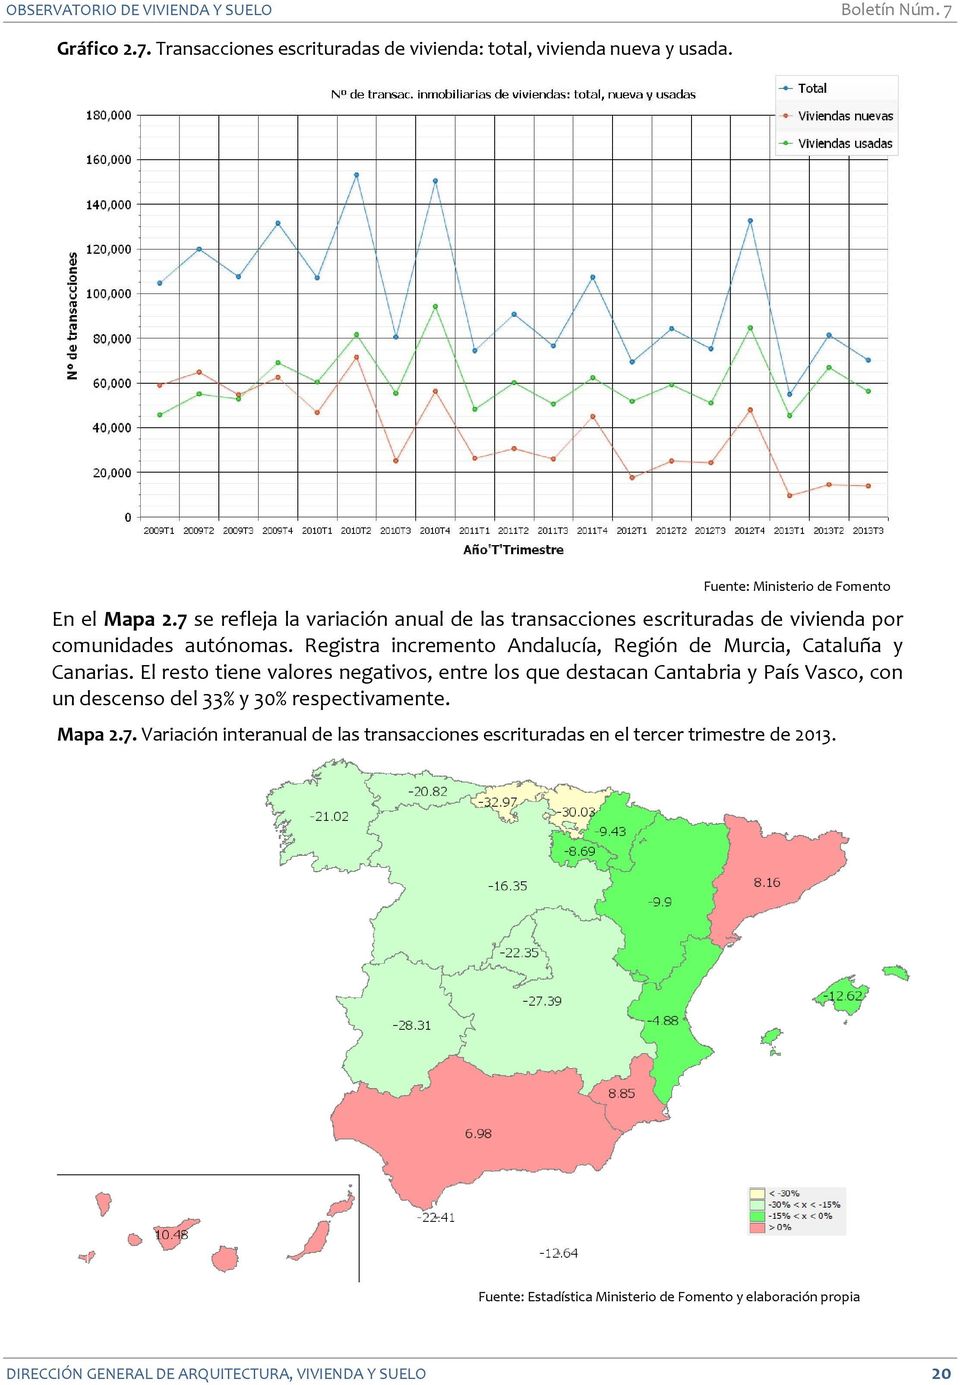 Registra incremento Andalucía, Región de Murcia, Cataluña y Canarias.